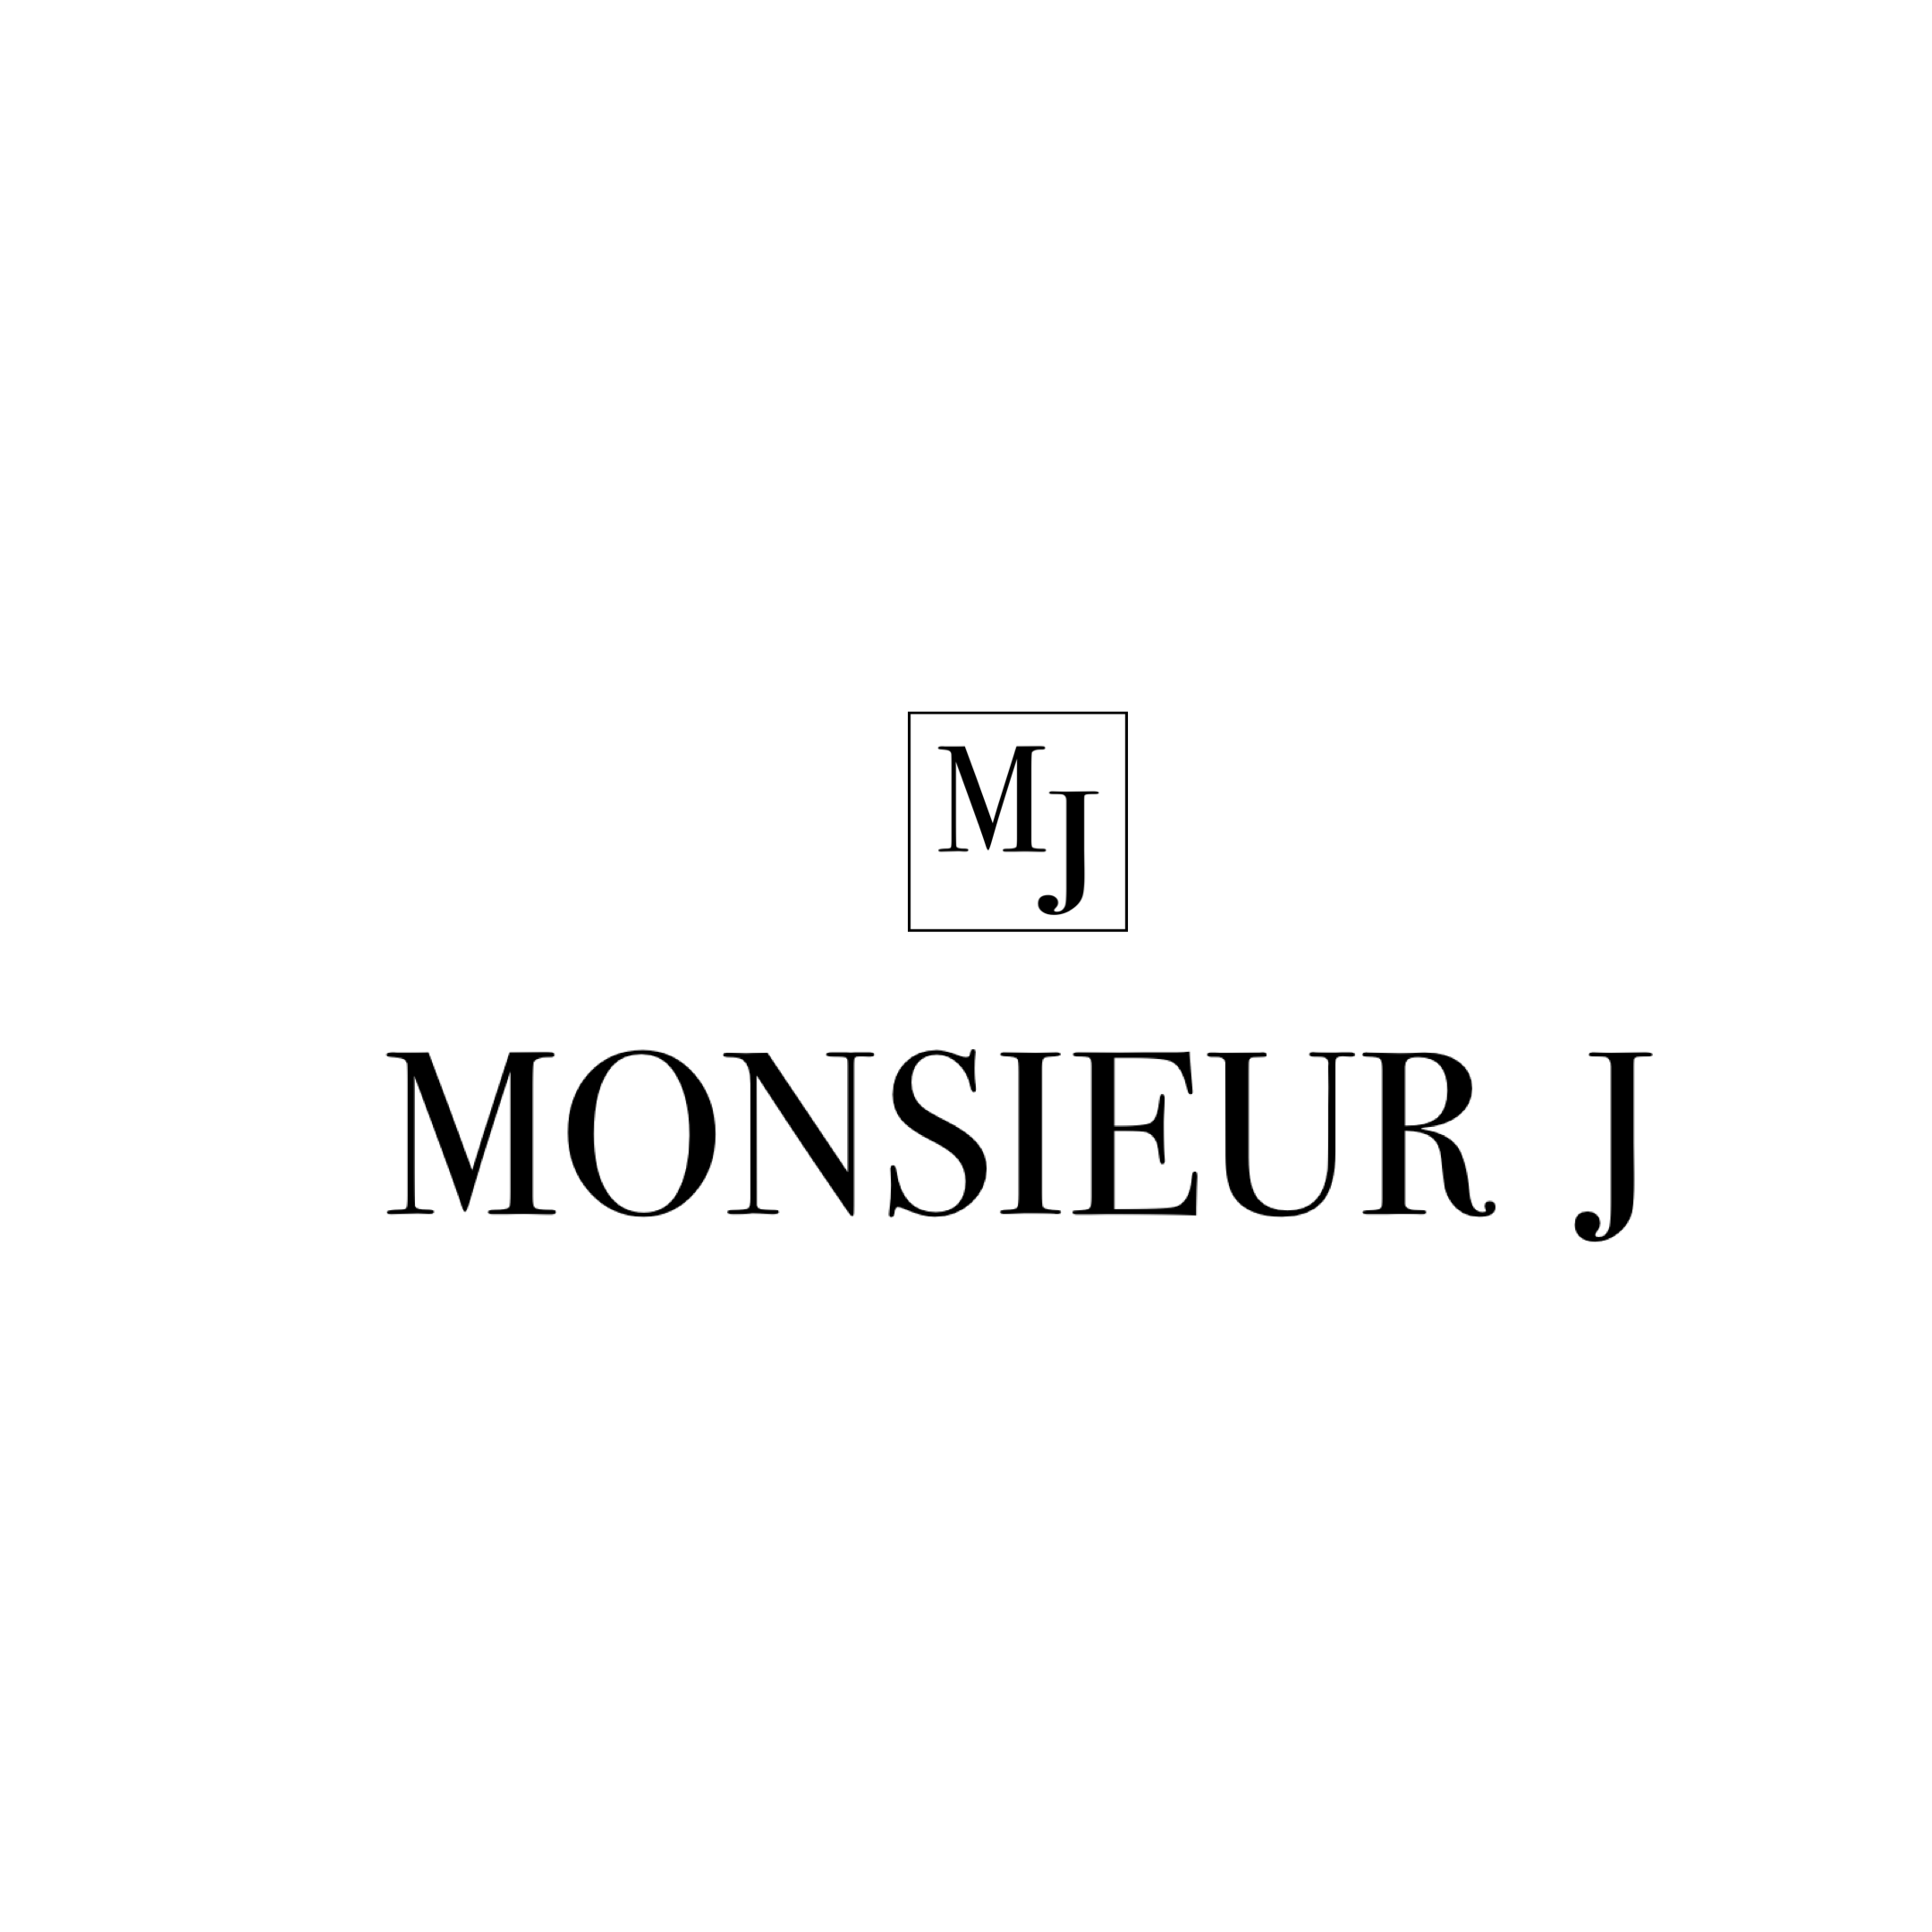 Monsieur J